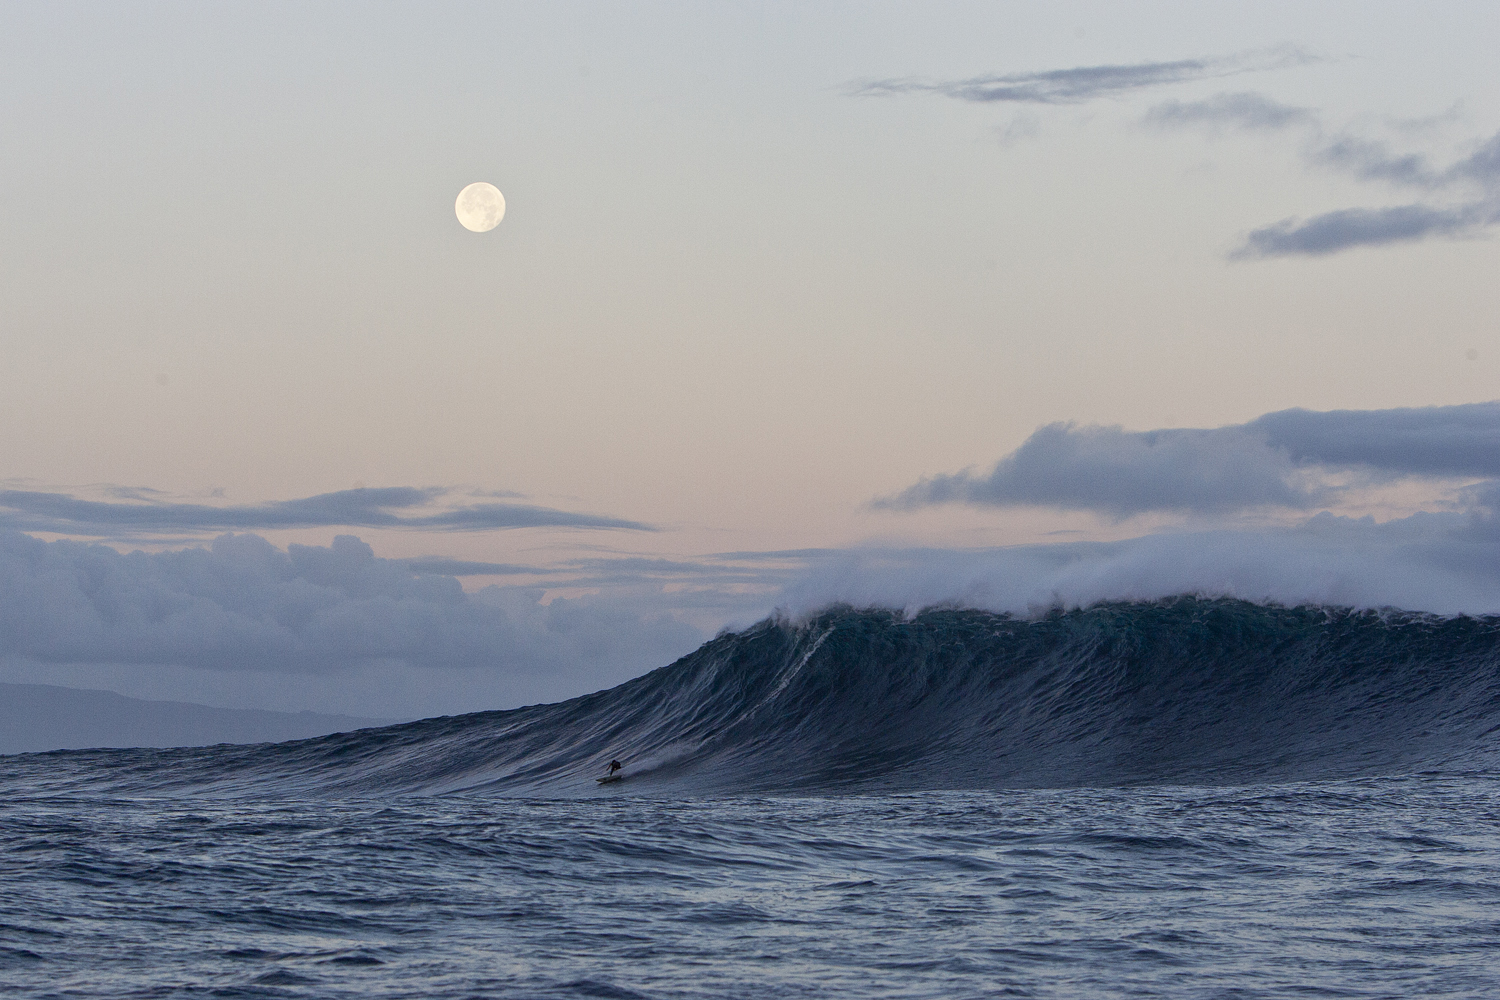 Jaws, Maui full moon and sunrise